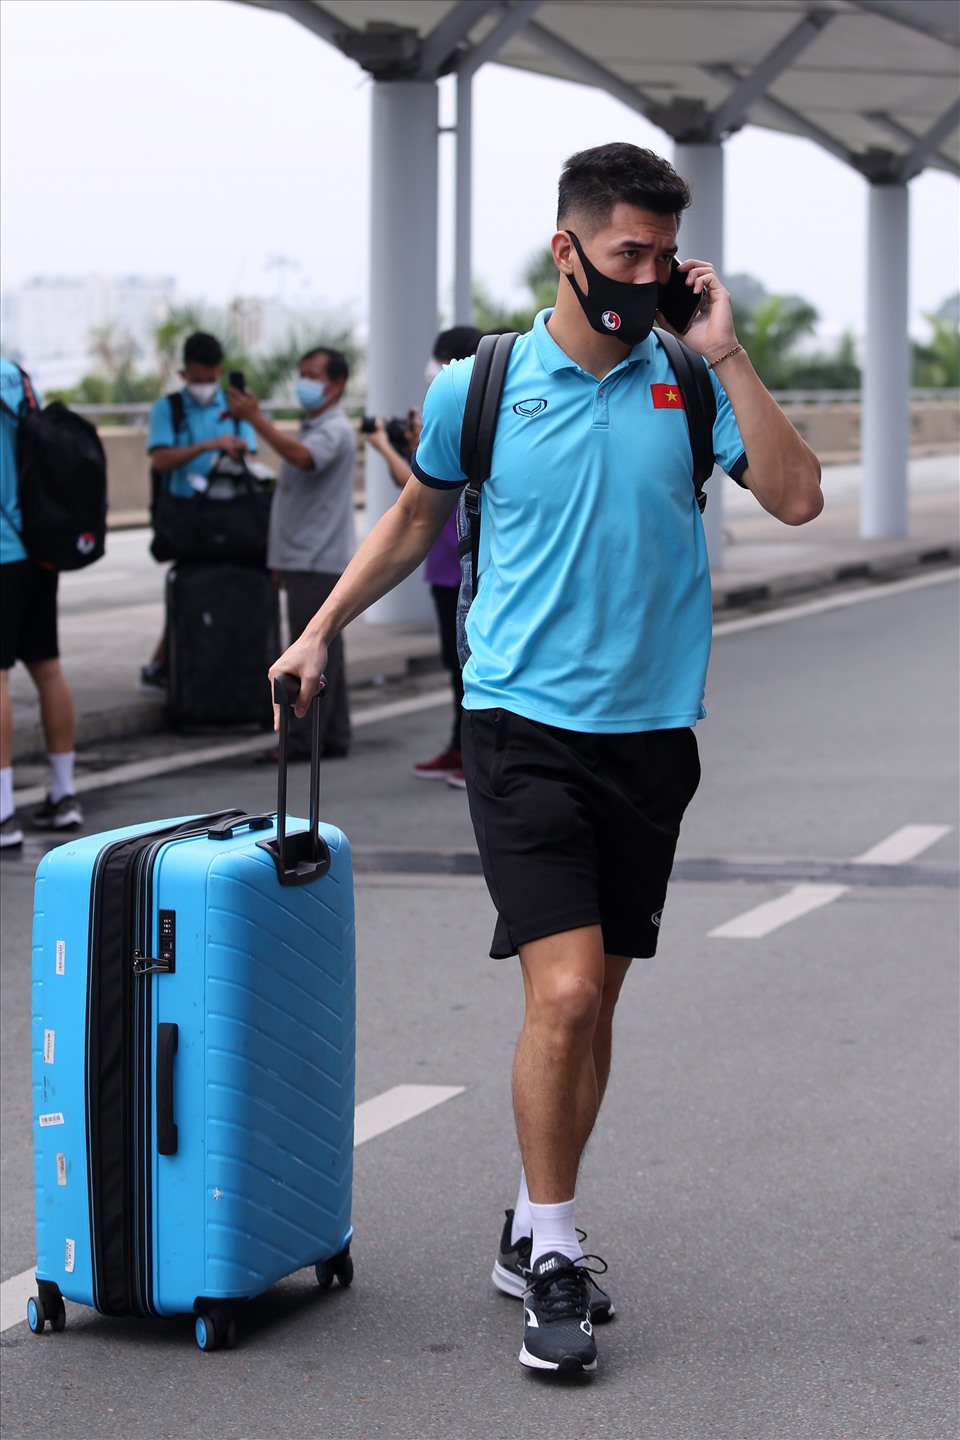 Tiền đạo Nguyễn Tiến Linh tiếp tục là niềm hy vọng trên hàng công của đội tuyển Việt Nam tại AFF Cup 2020. Ở vị trí tiền đạo, Tiến Linh đã ghi 8 bàn thắng sau 20 lần ra sân trong màu áo đội tuyển quốc gia. Tài năng của cầu thủ này đã được kiểm chứng ở vòng loại World Cup 2022 khi ghi đến 7 bàn thắng trong 13 trận đấu.